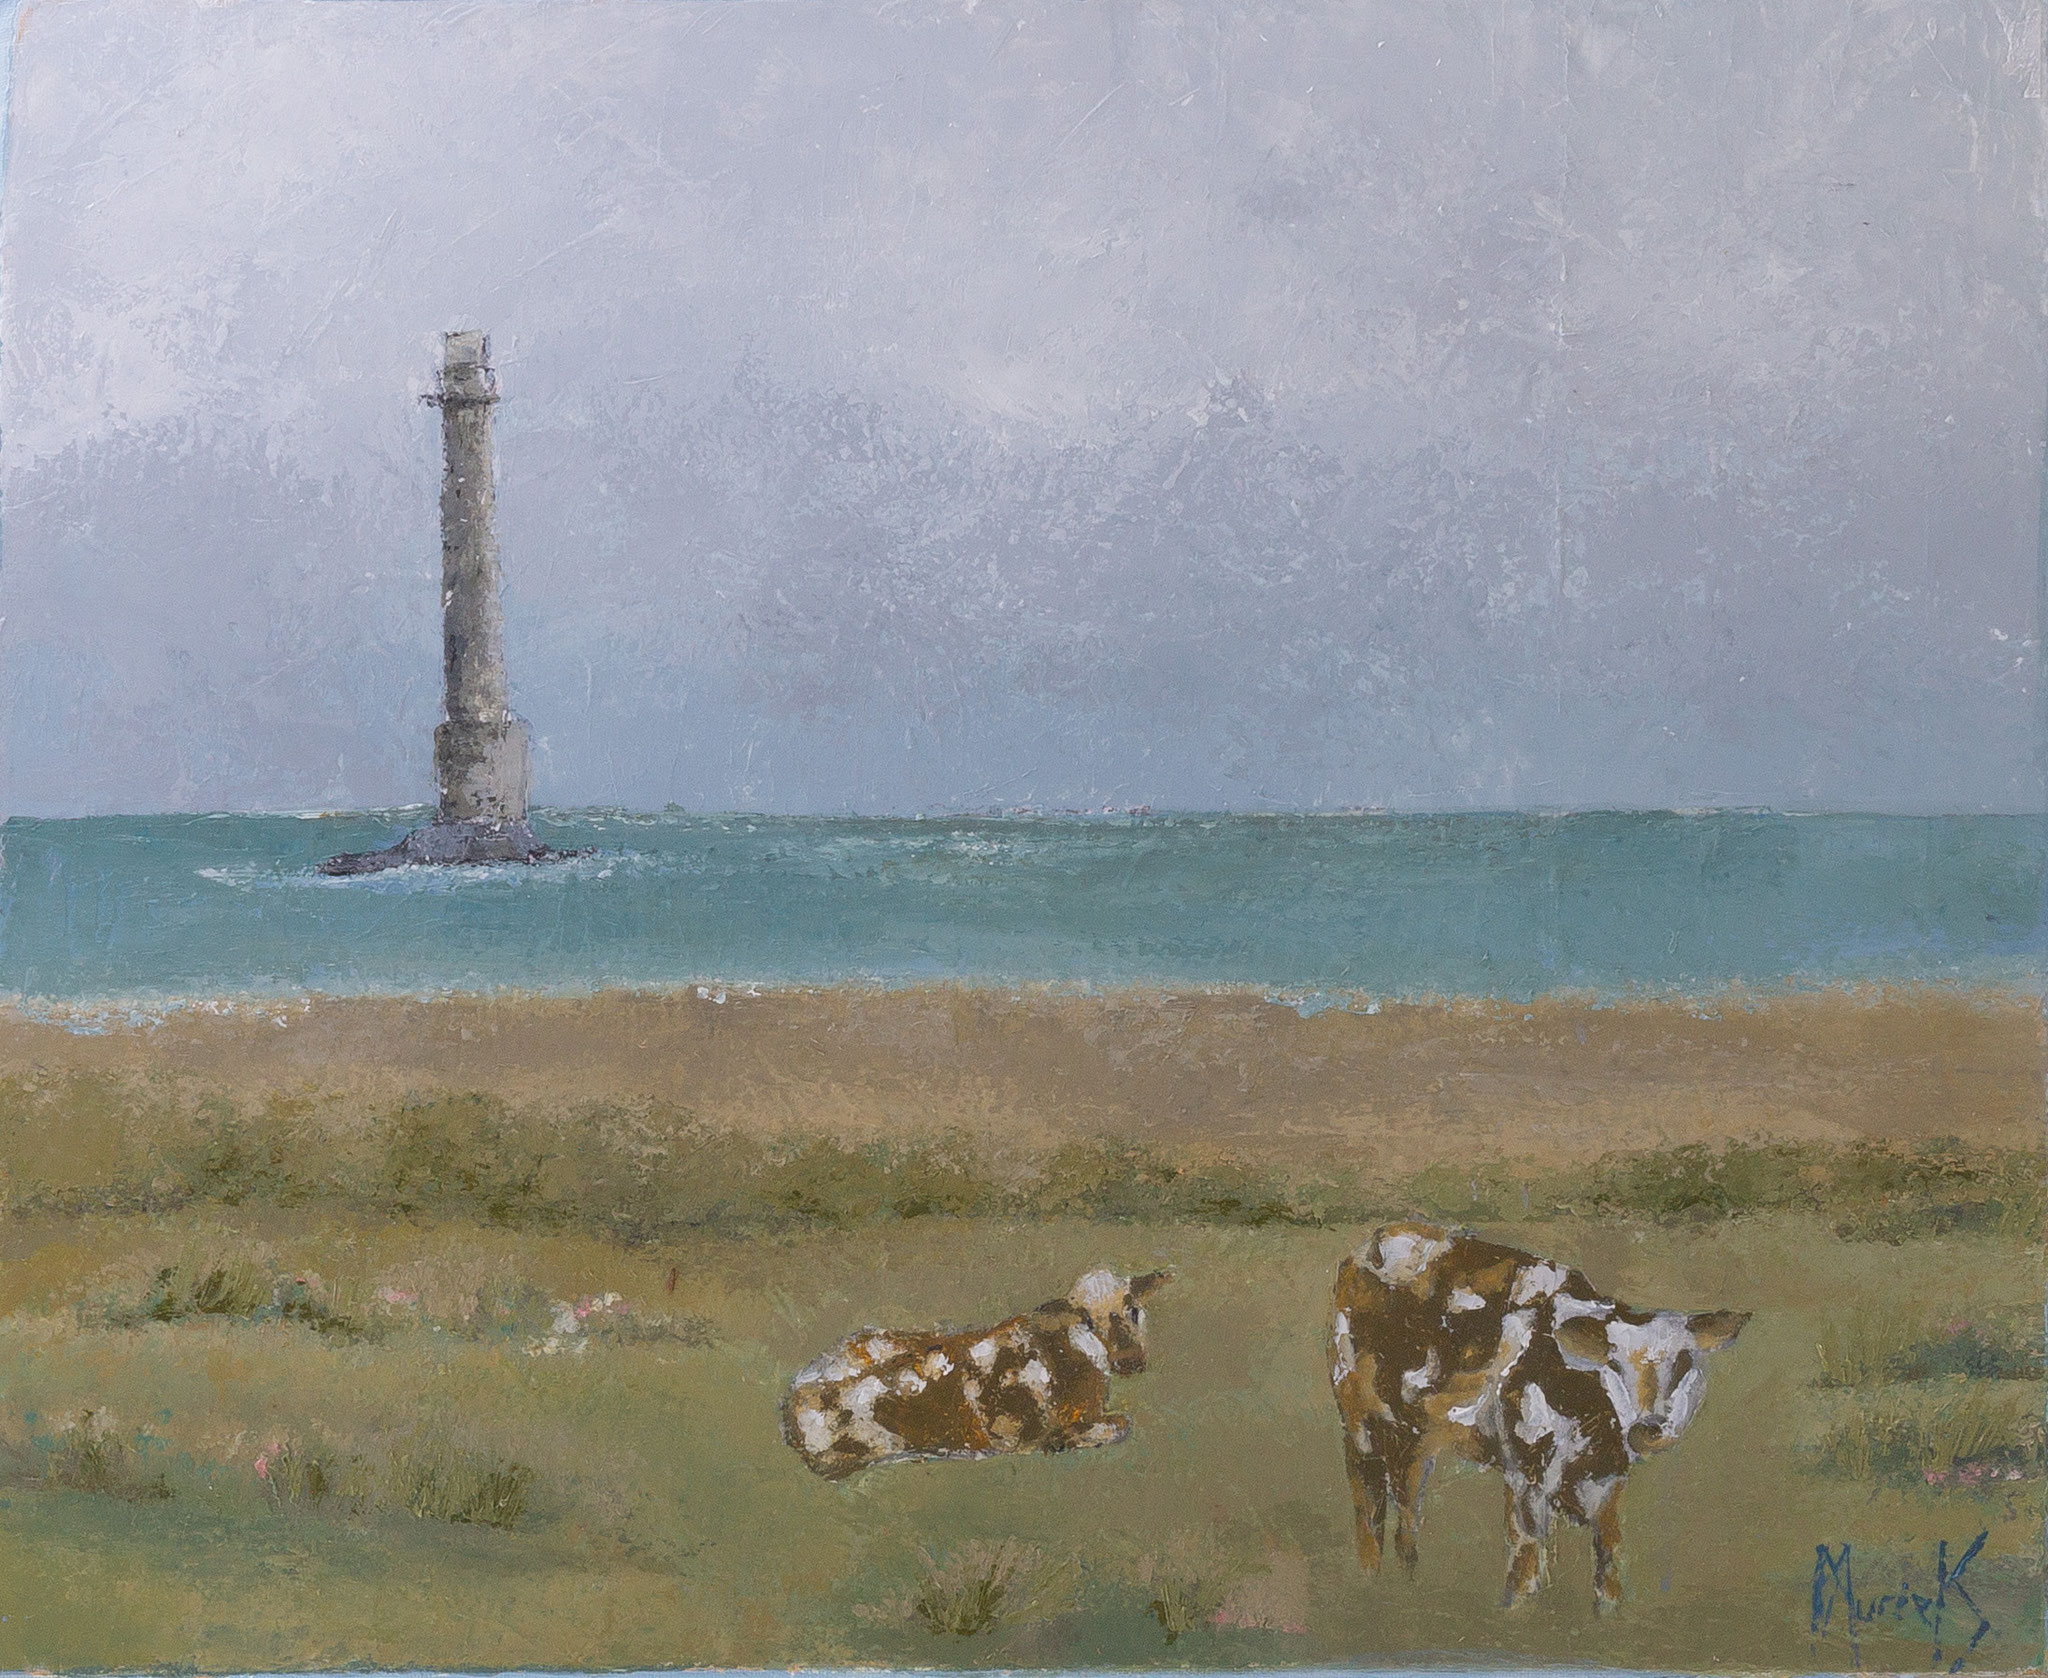 Bord de mer I, Les vaches du Cotentin, acrylique sur toile, 55X46, mars 2020